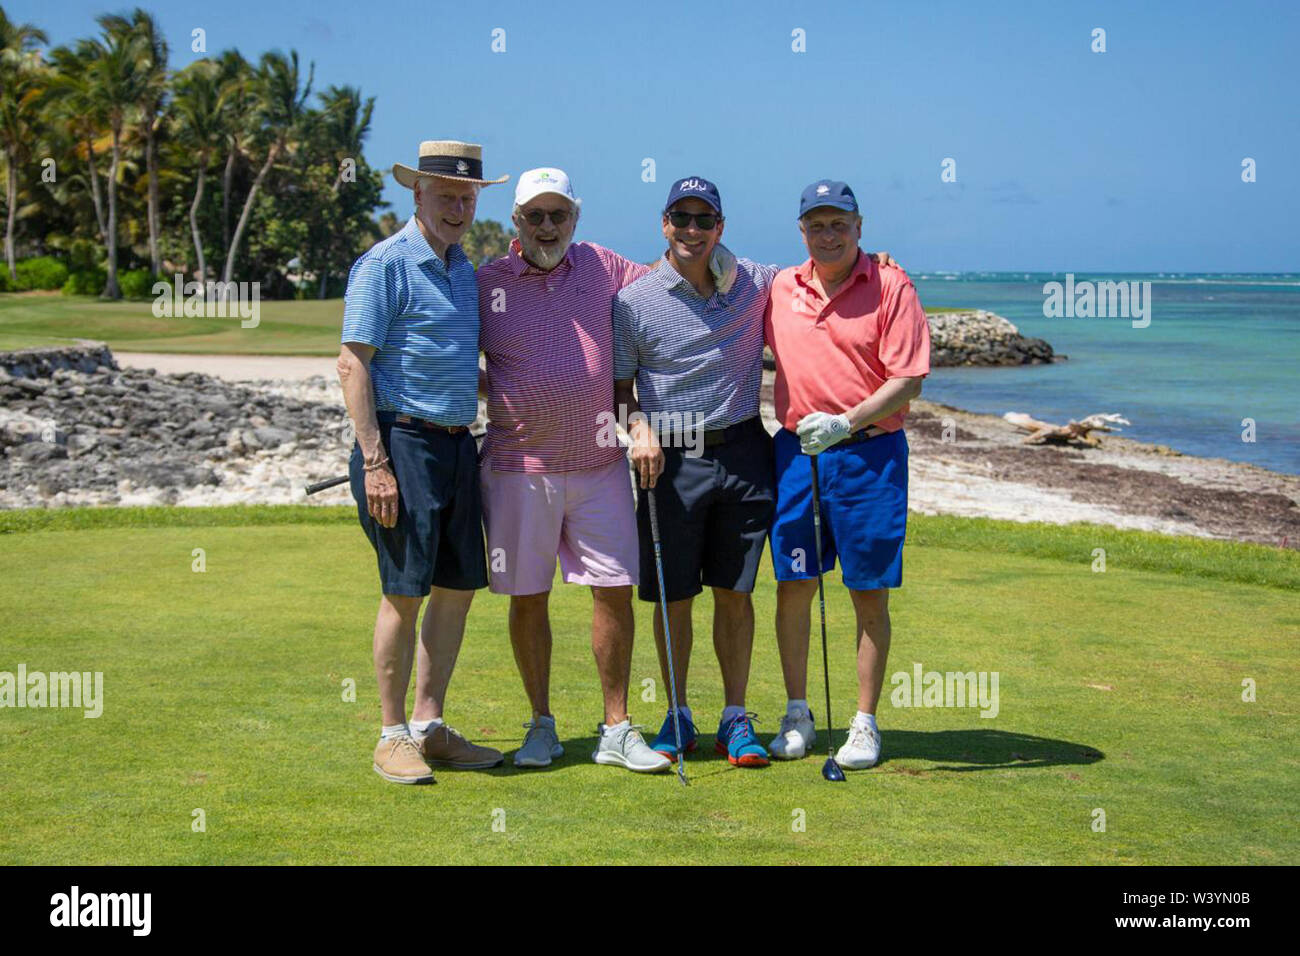 PUNTA CANA - Rep. Dom - 17 de julio: el ex presidente estadounidense Bill Clinton visto jugar al golf durante sus vacaciones en el Puntacana Resort & Club el 17 de julio de 2019 en Punta Cana, República Dominicana. Crédito: El Ministerio de Turismo de República Dominicana/MediaPunch Foto de stock